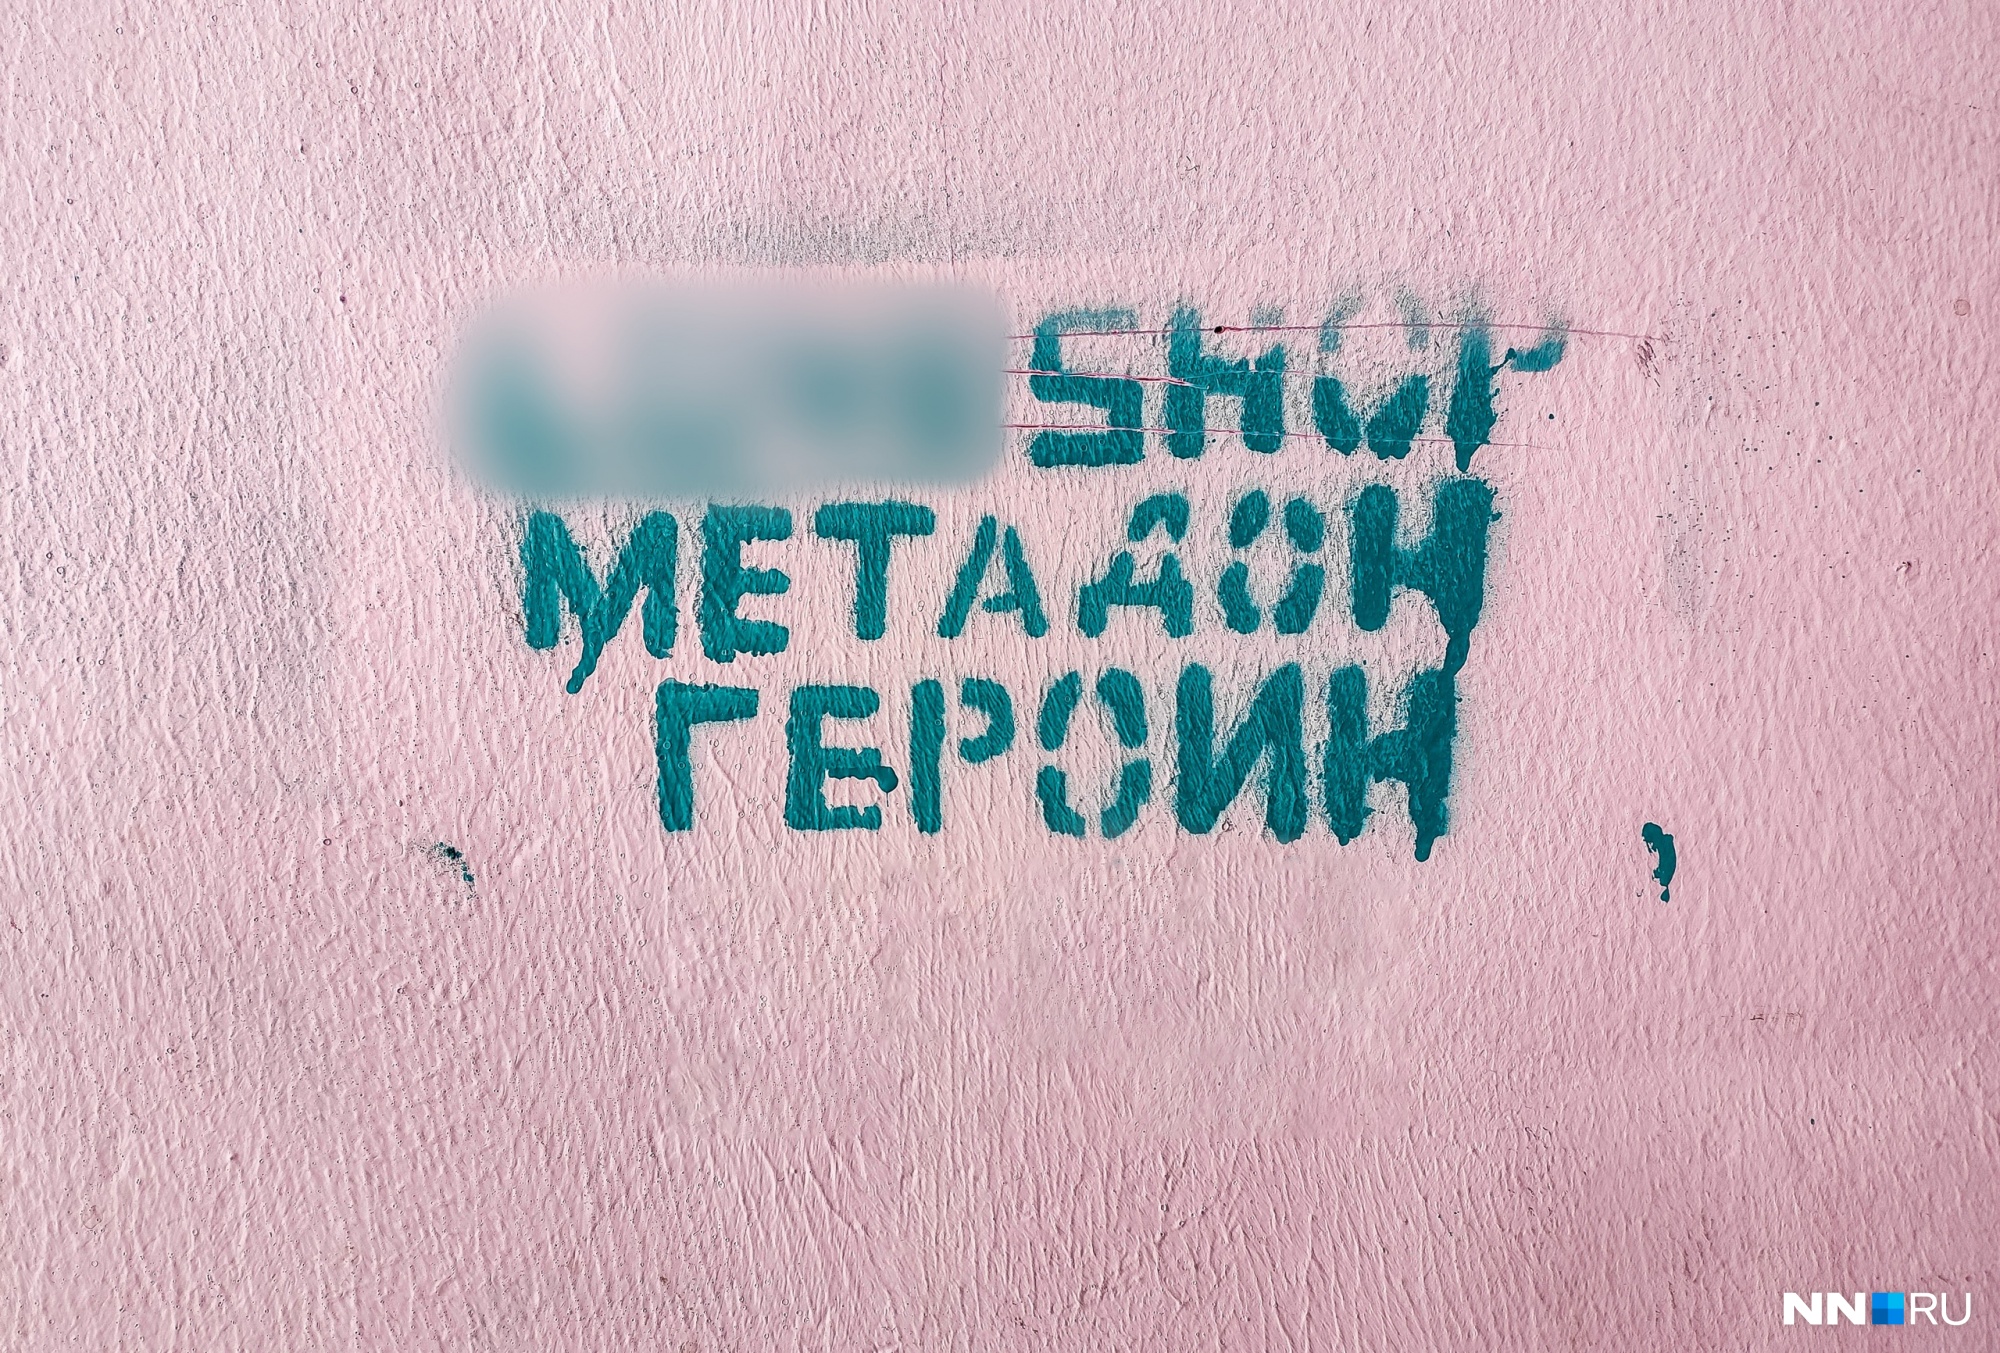 Такие объявления появляются на улицах Нижнего Новгорода регулярно. С ними пытаются бороться активисты и местные жители